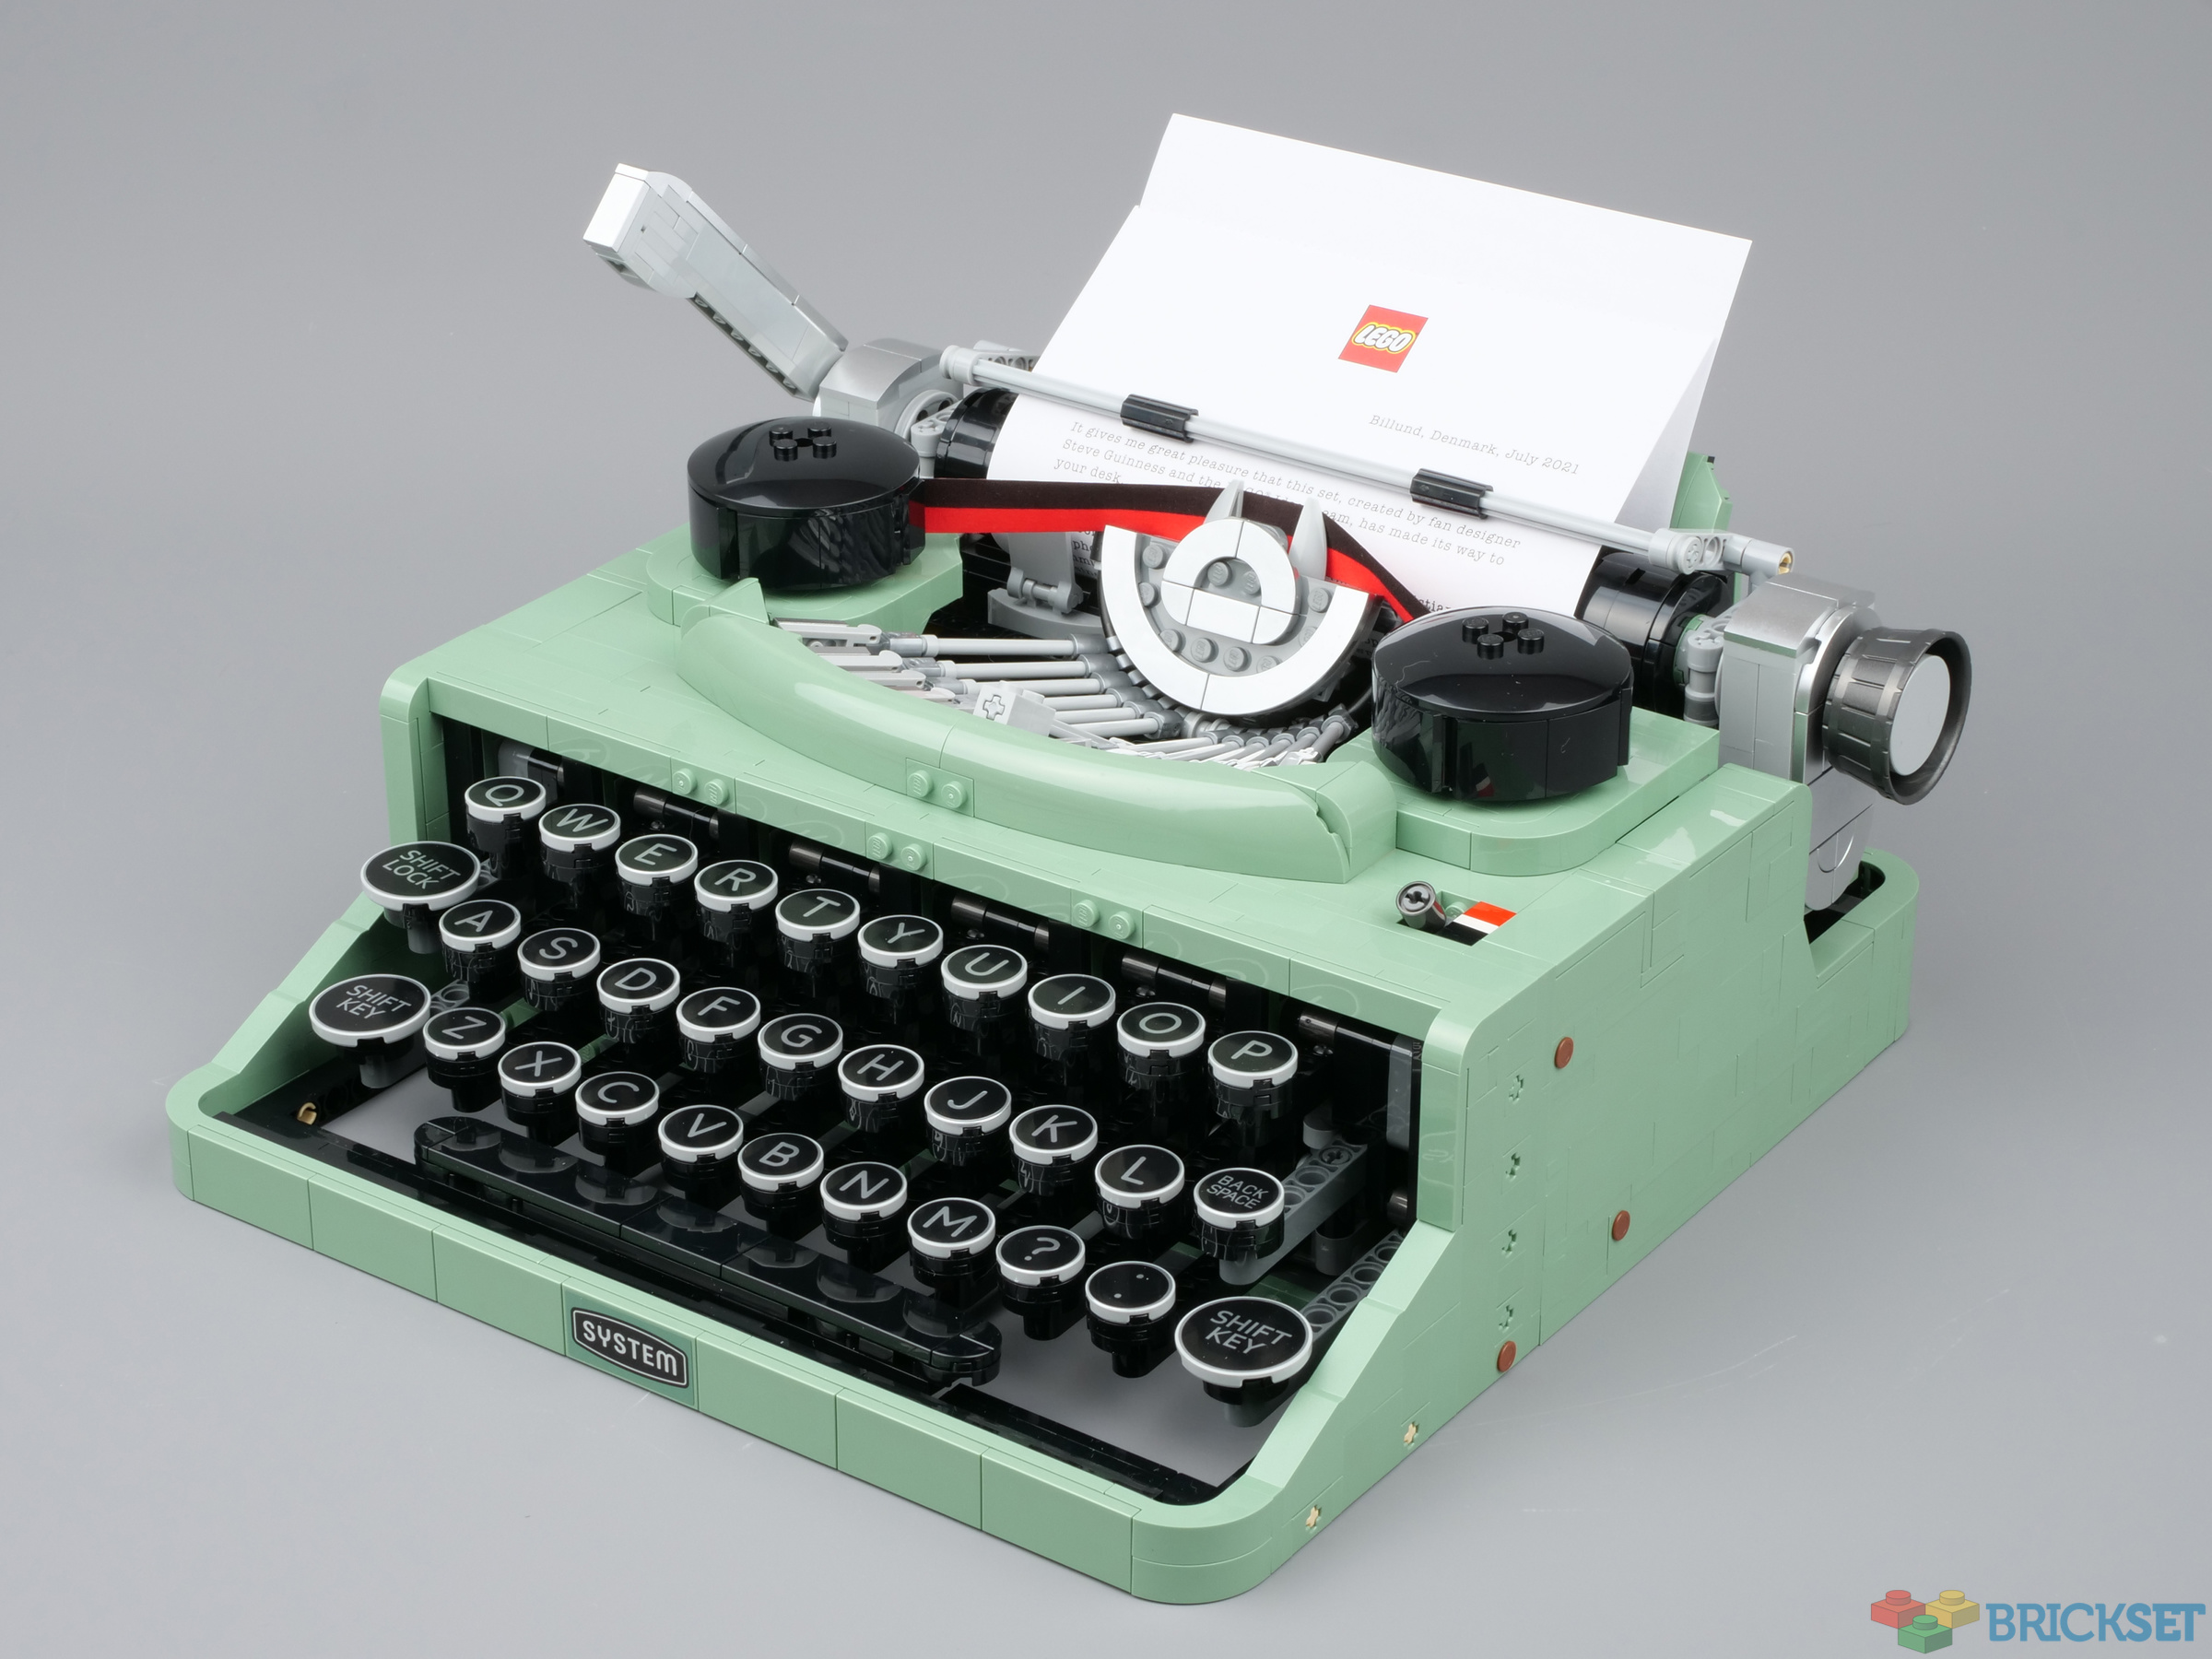 LEGO 21327 Typewriter review | Brickset